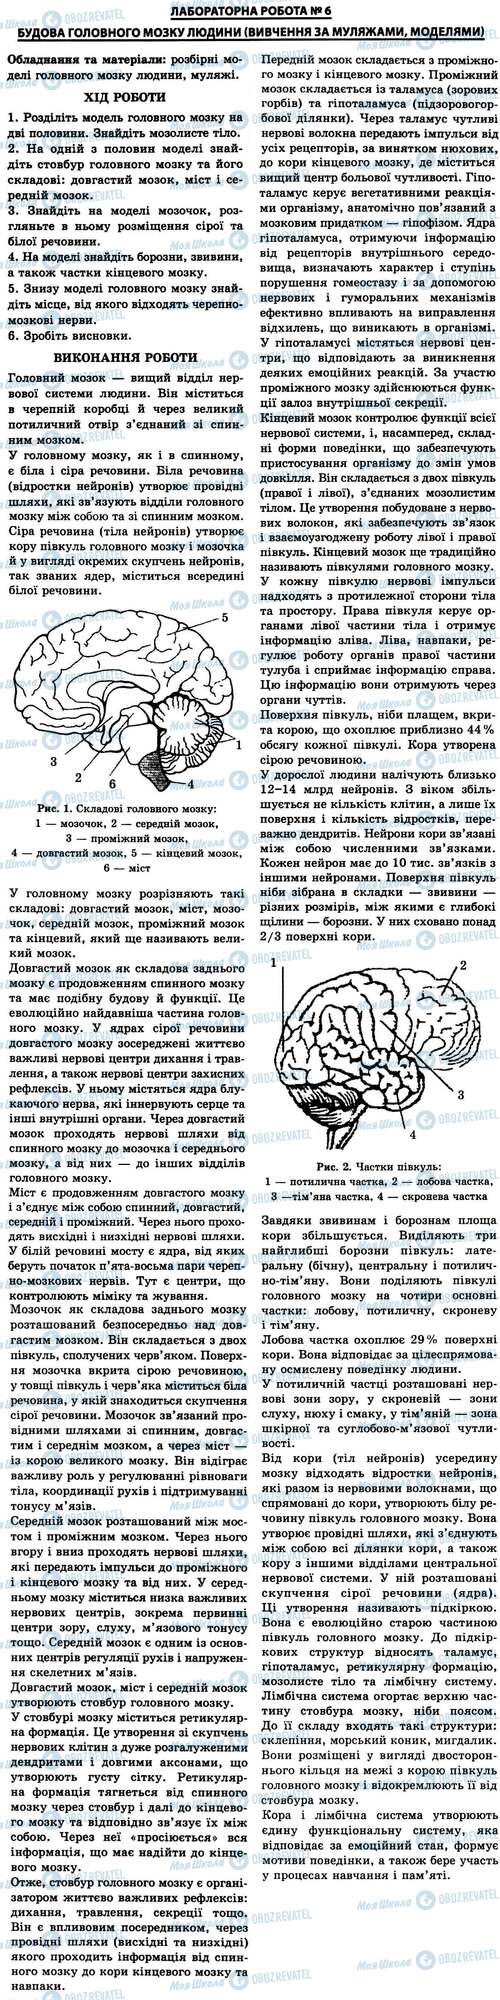 ГДЗ Біологія 9 клас сторінка № 6. Будова головного мозку людини